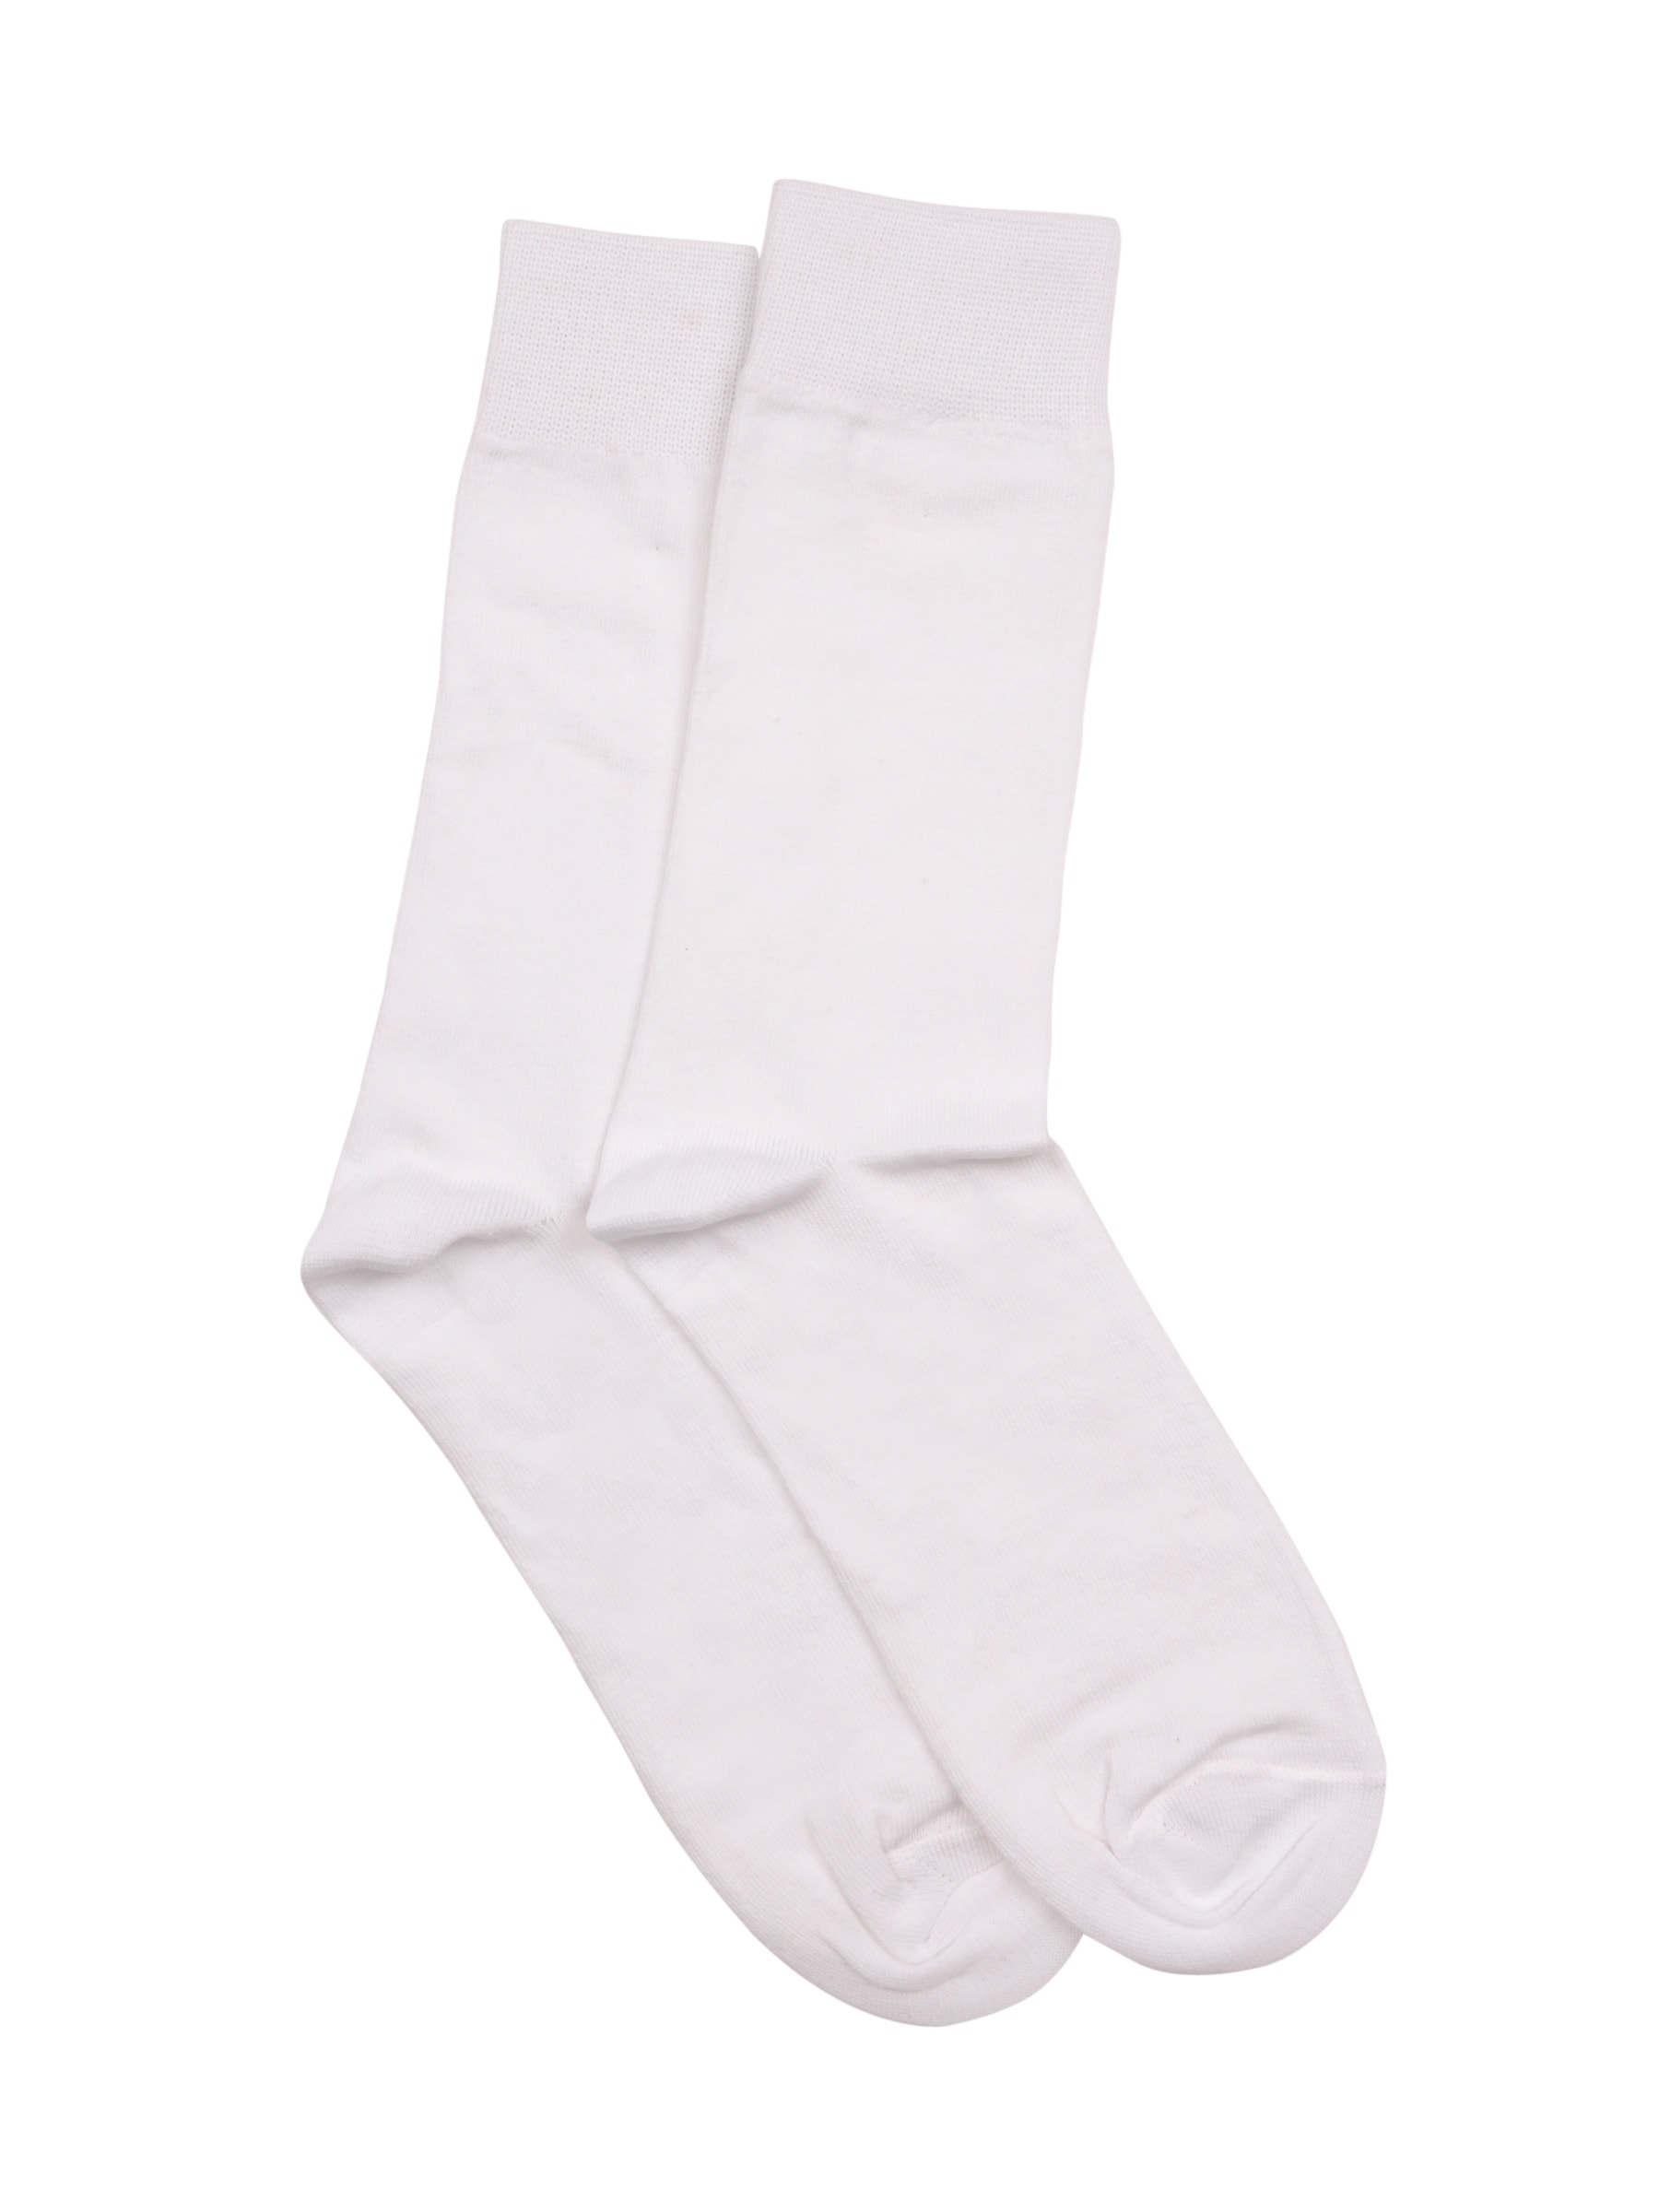 Reid & Taylor Men Solid White Socks